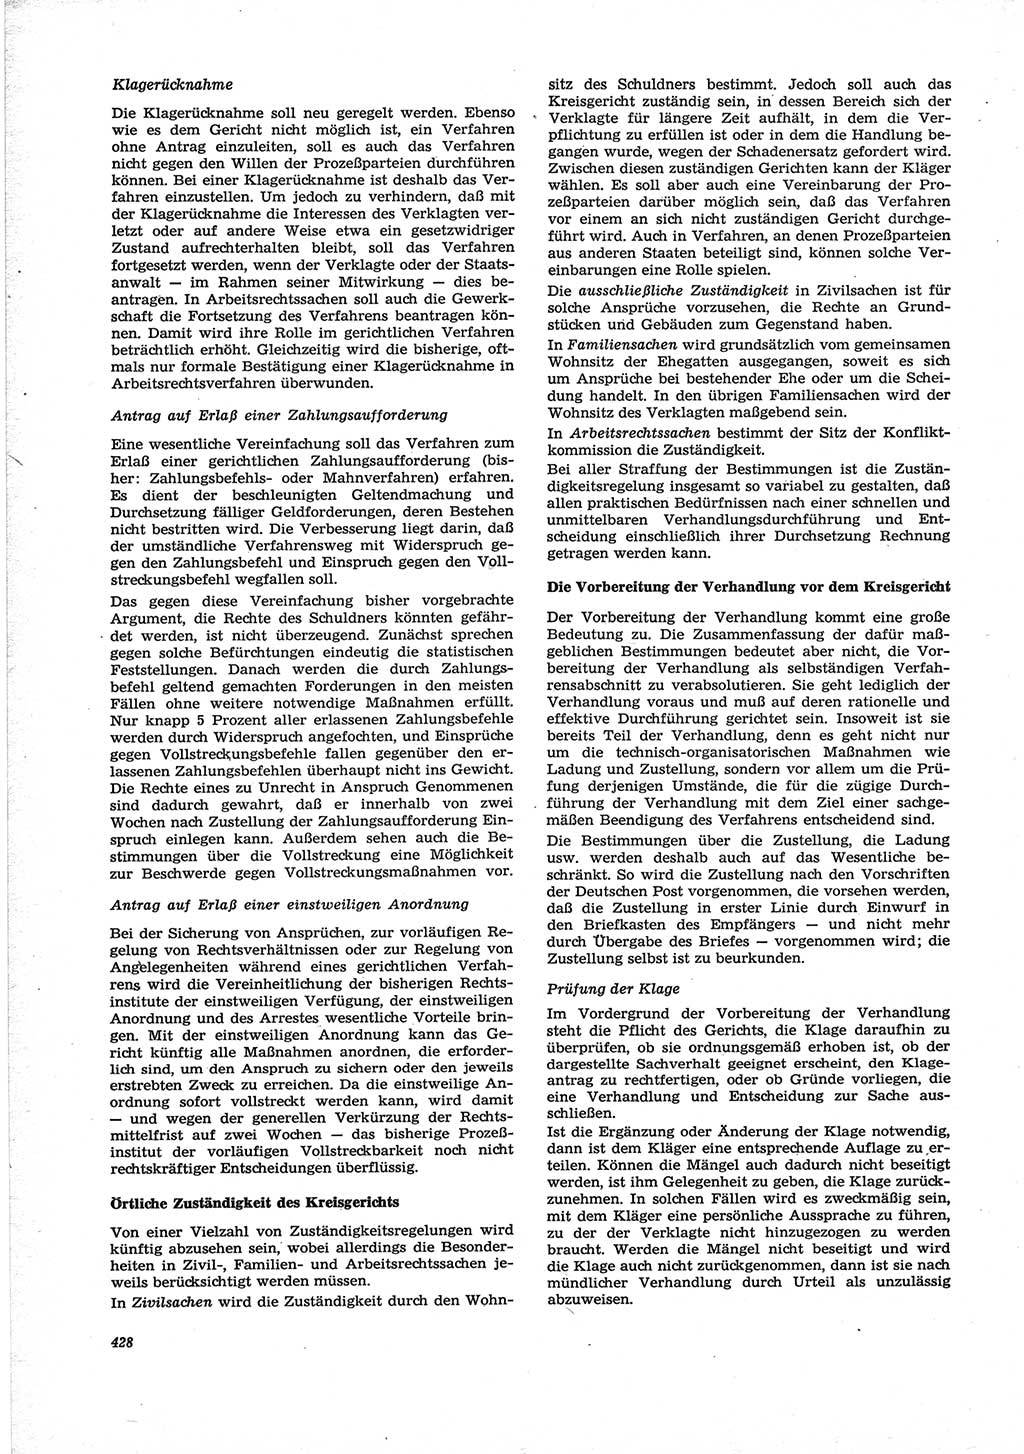 Neue Justiz (NJ), Zeitschrift für Recht und Rechtswissenschaft [Deutsche Demokratische Republik (DDR)], 28. Jahrgang 1974, Seite 428 (NJ DDR 1974, S. 428)